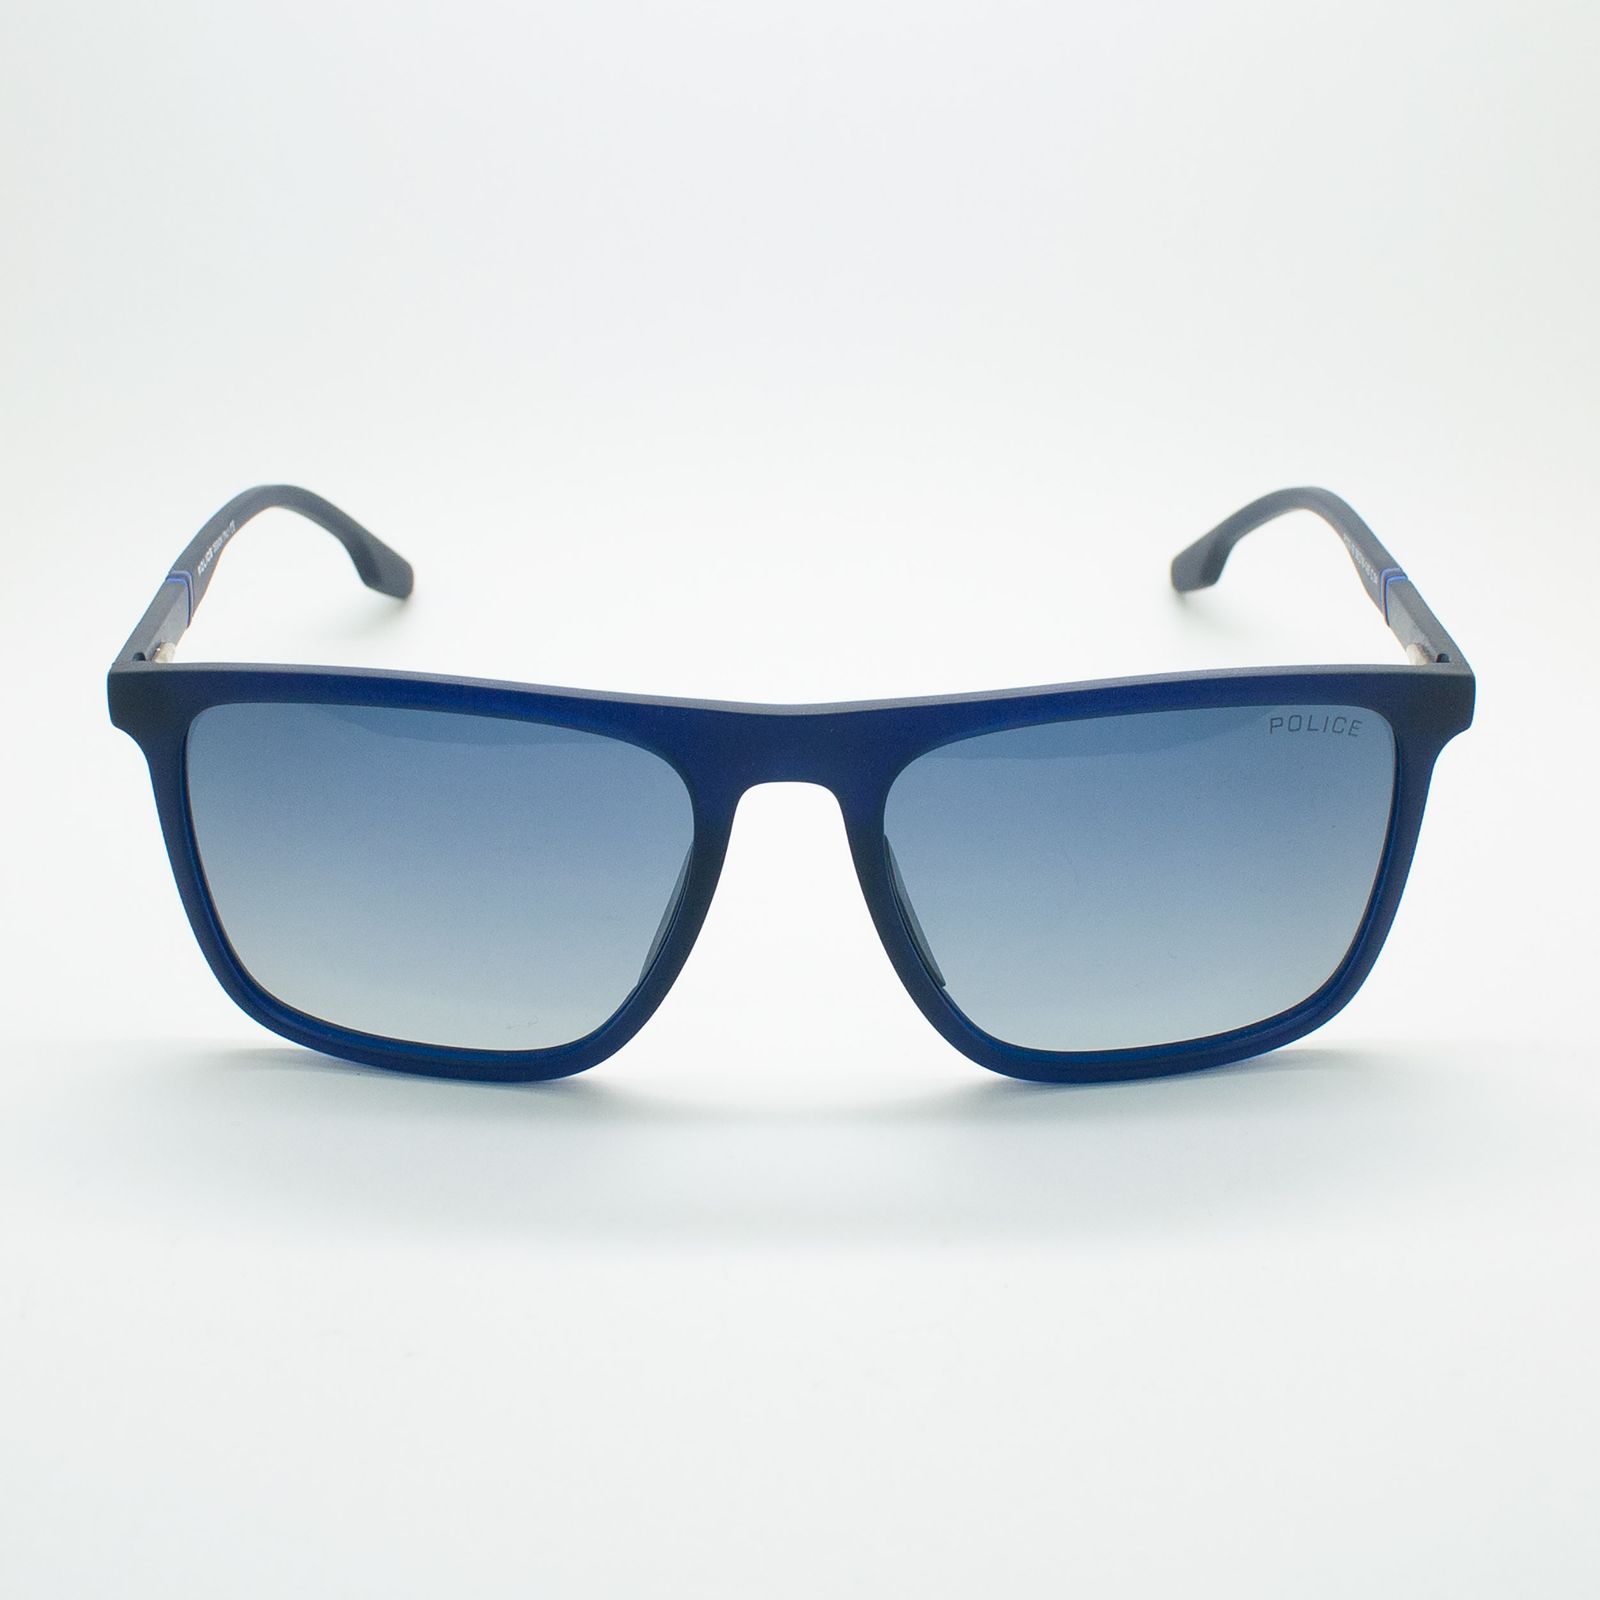 عینک آفتابی پلیس مدل FC02-16 C04 -  - 3